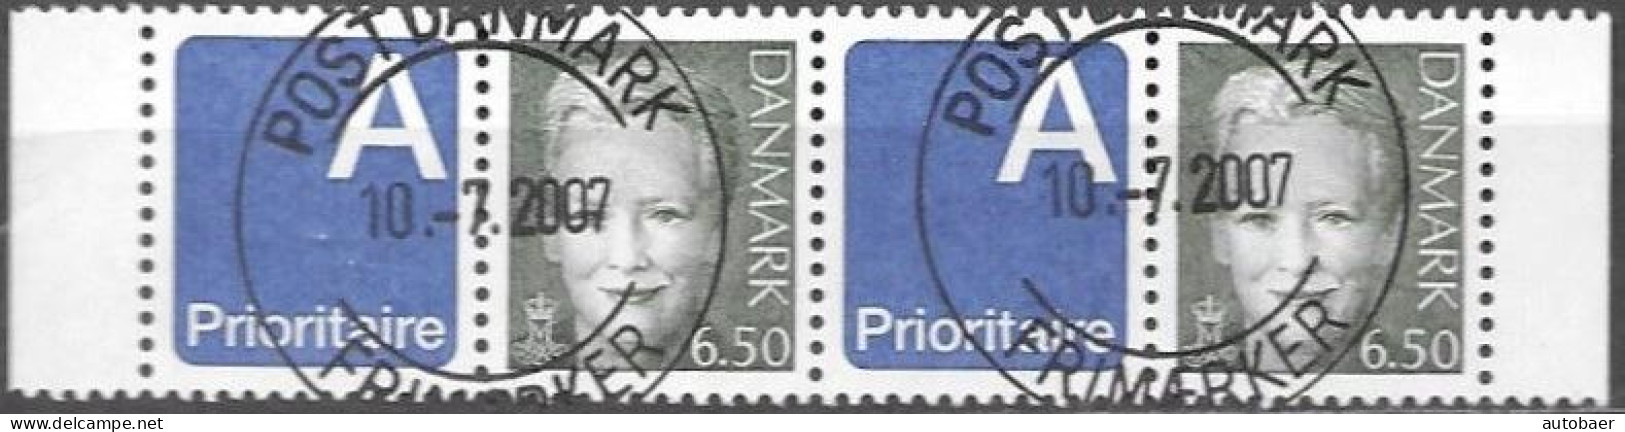 Denmark Danmark Dänemark 2003 Margrethe Prioritaire Michel Nr. 1297 Zf Stripe Of 2 Cancelled Oblitere Gestempelt Used Oo - Usati